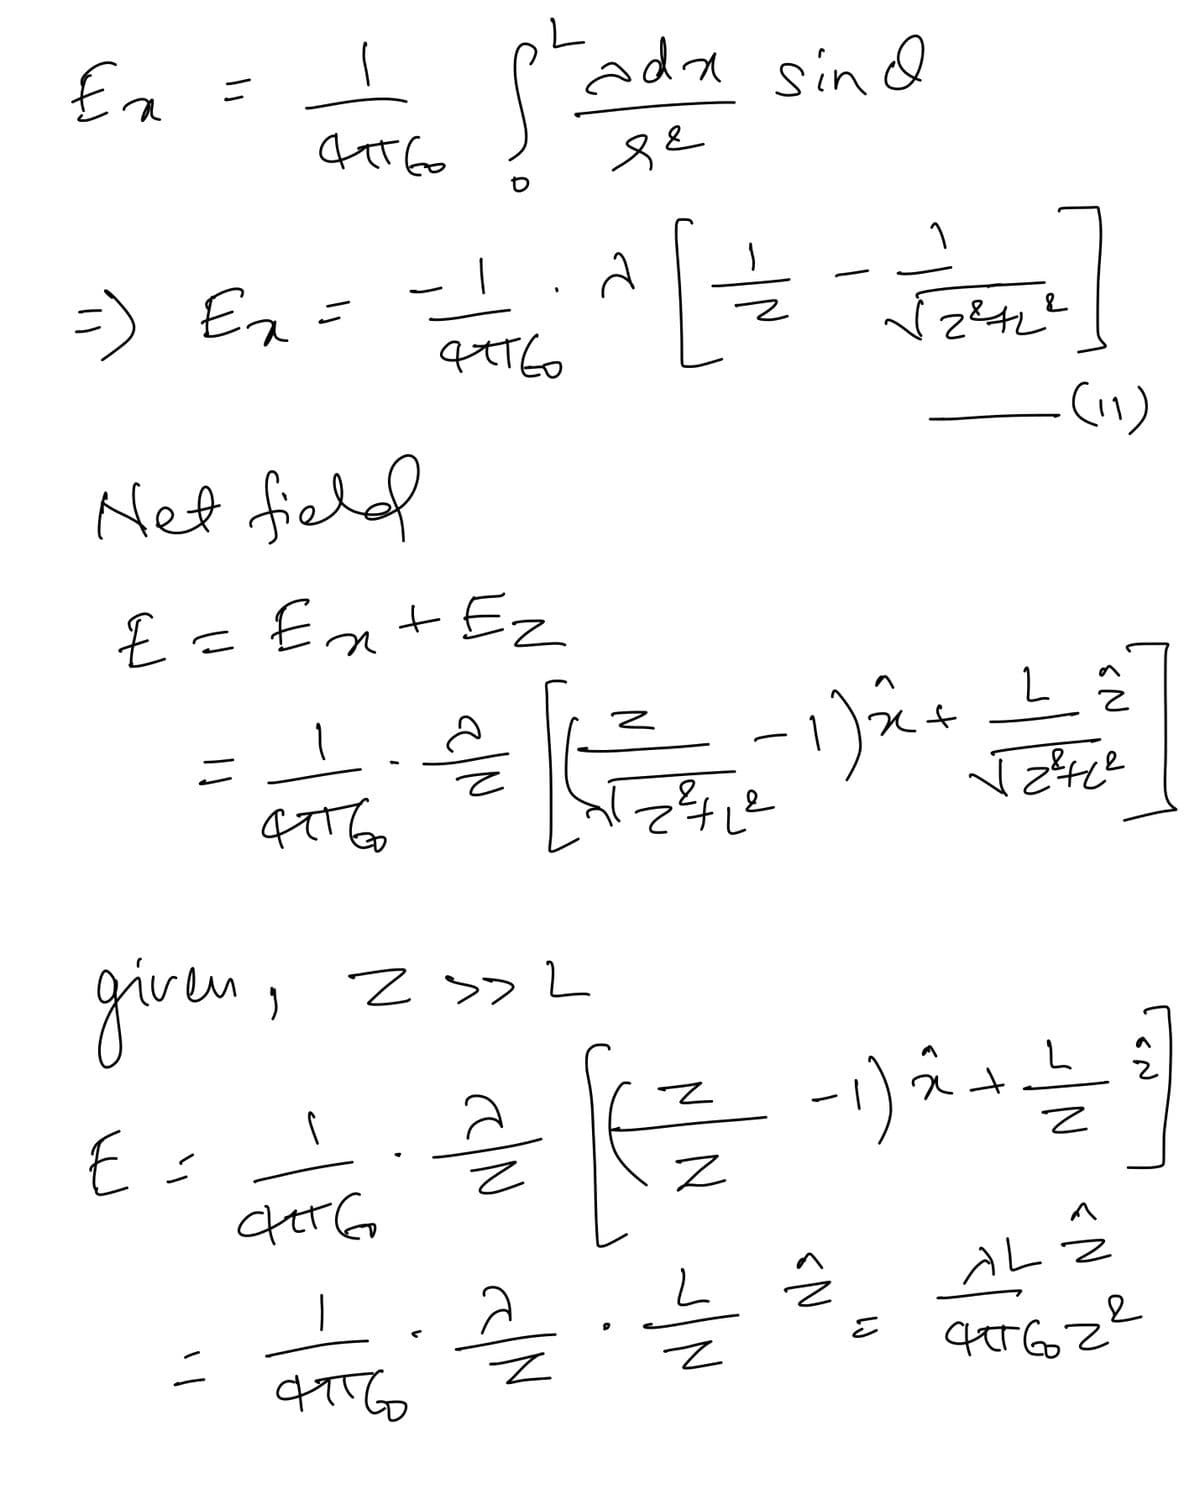 Ea =
ada sinQ
=) Ez =
(い)
Net field
€ = En+ Ez
2,
given,
Z >>L
AL
